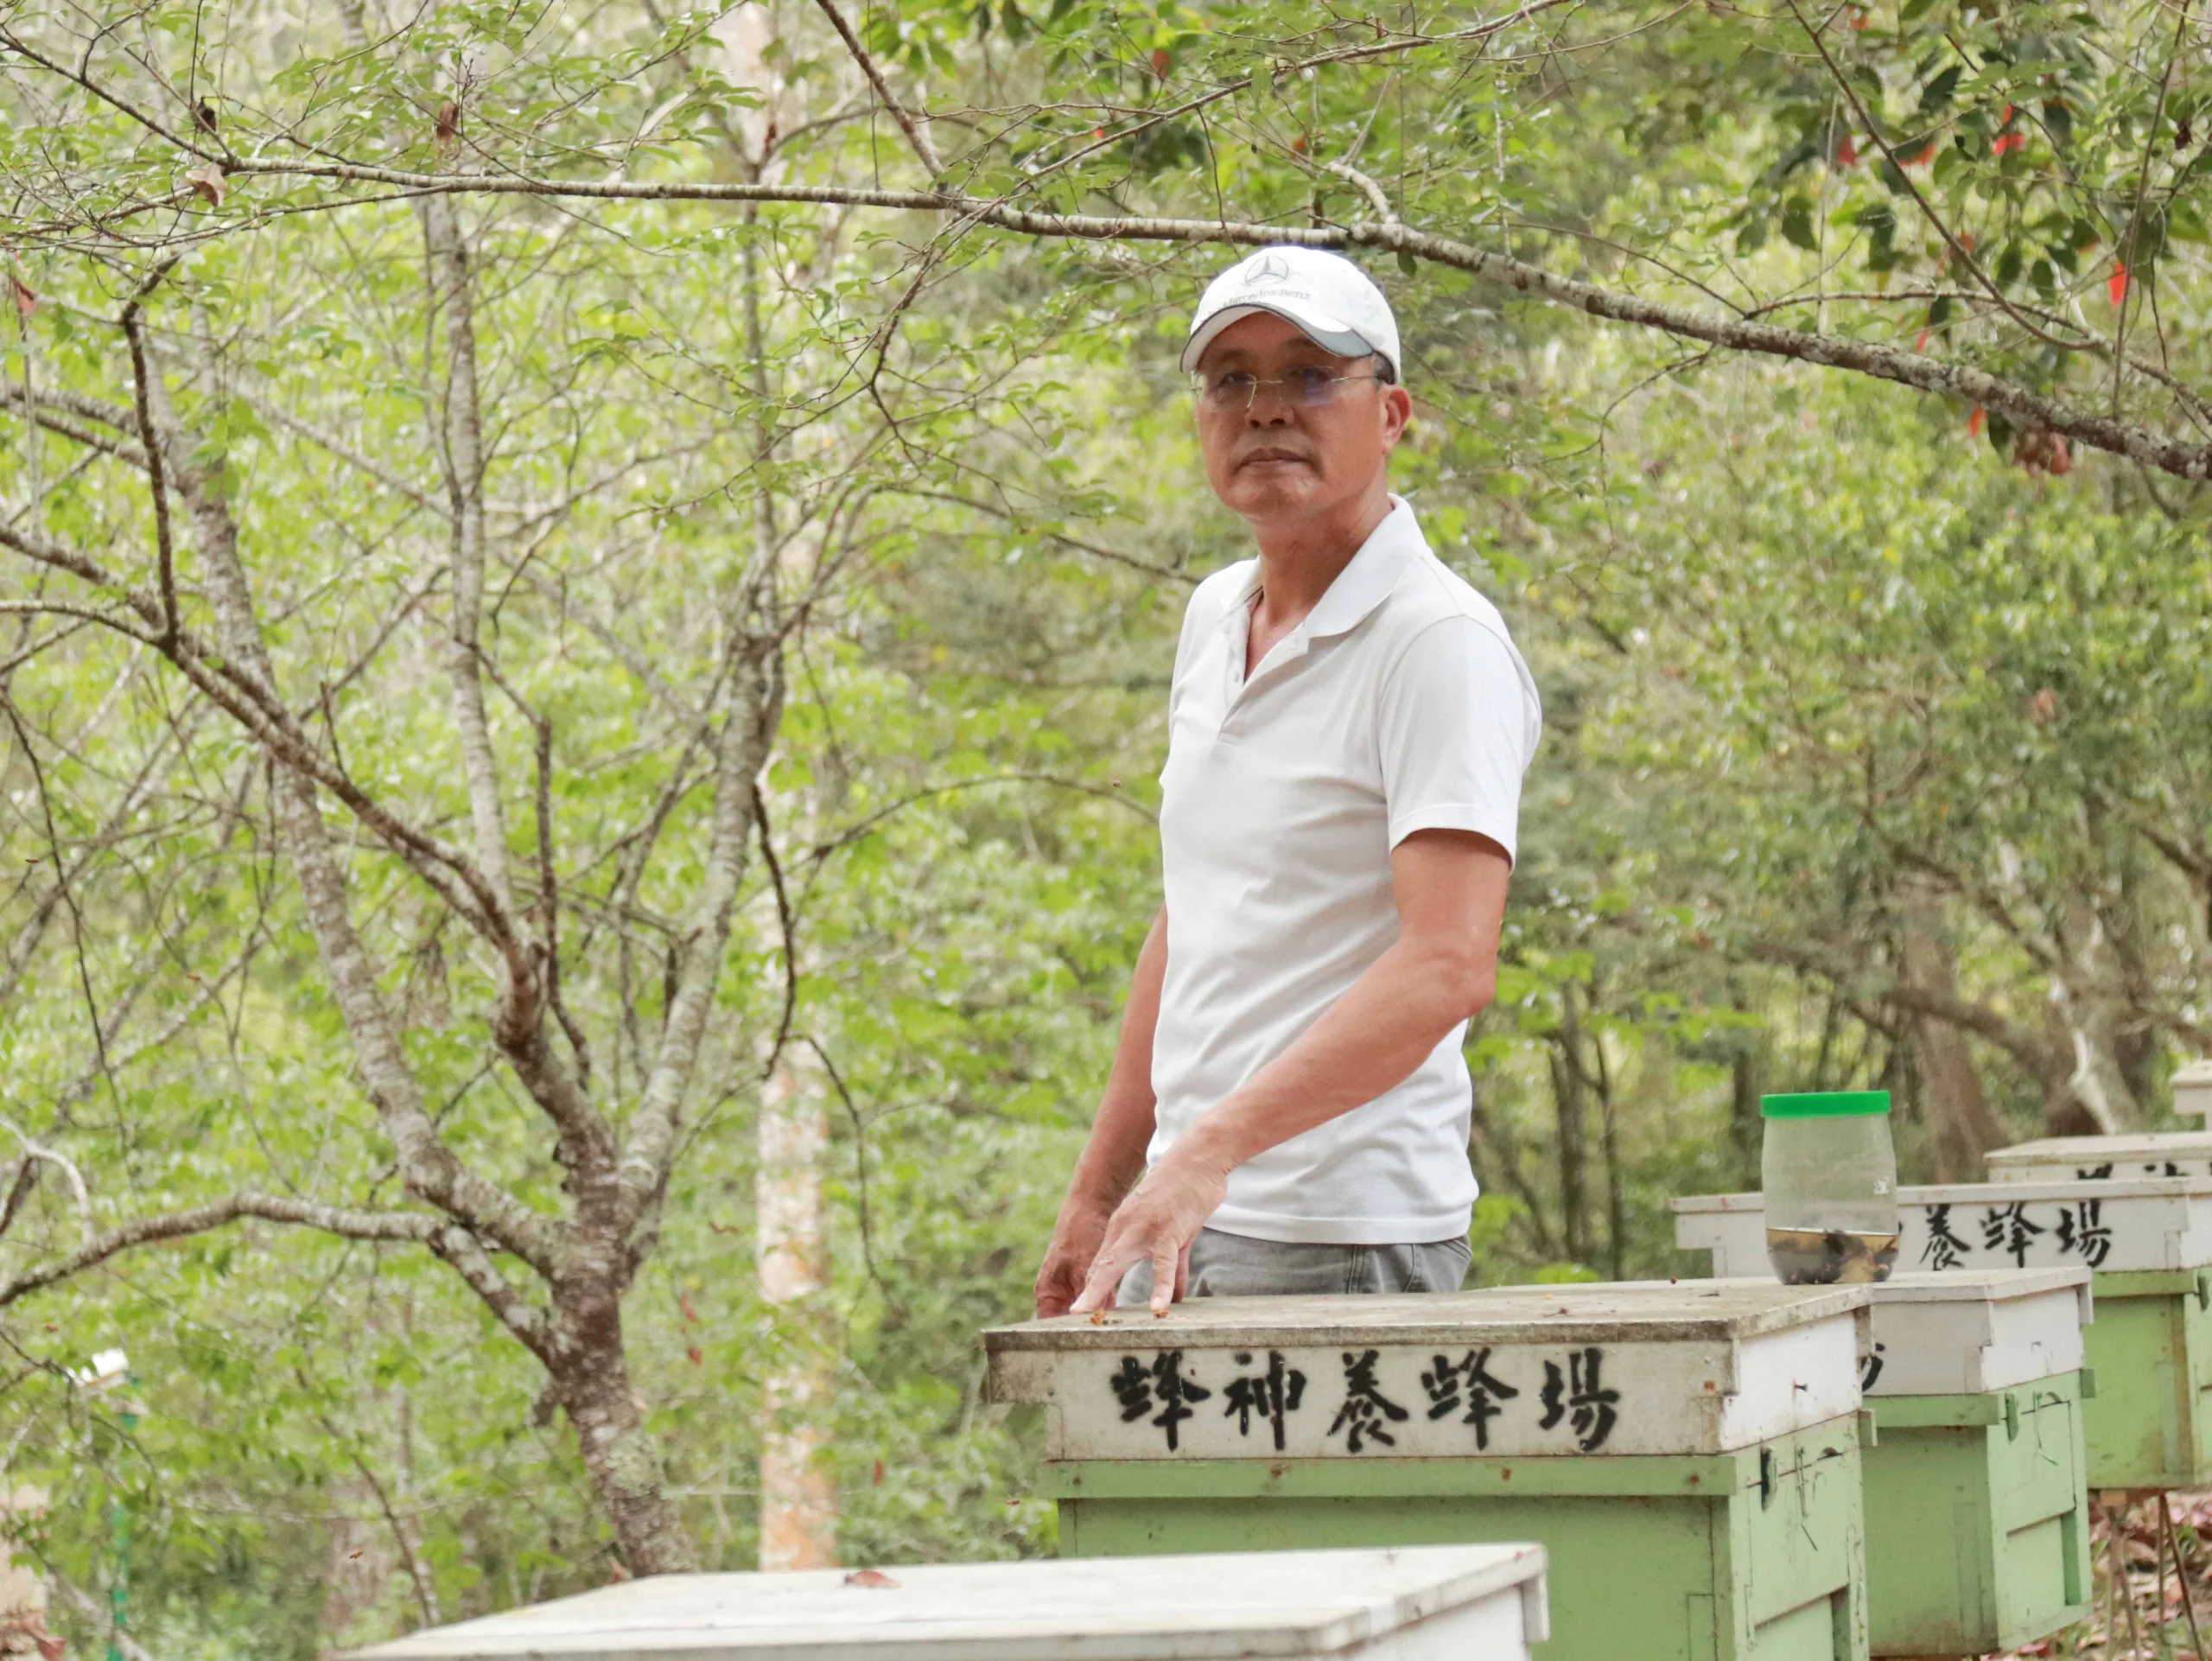 【攝影報導】林下養蜂創經濟價值 產收高品質森林蜜